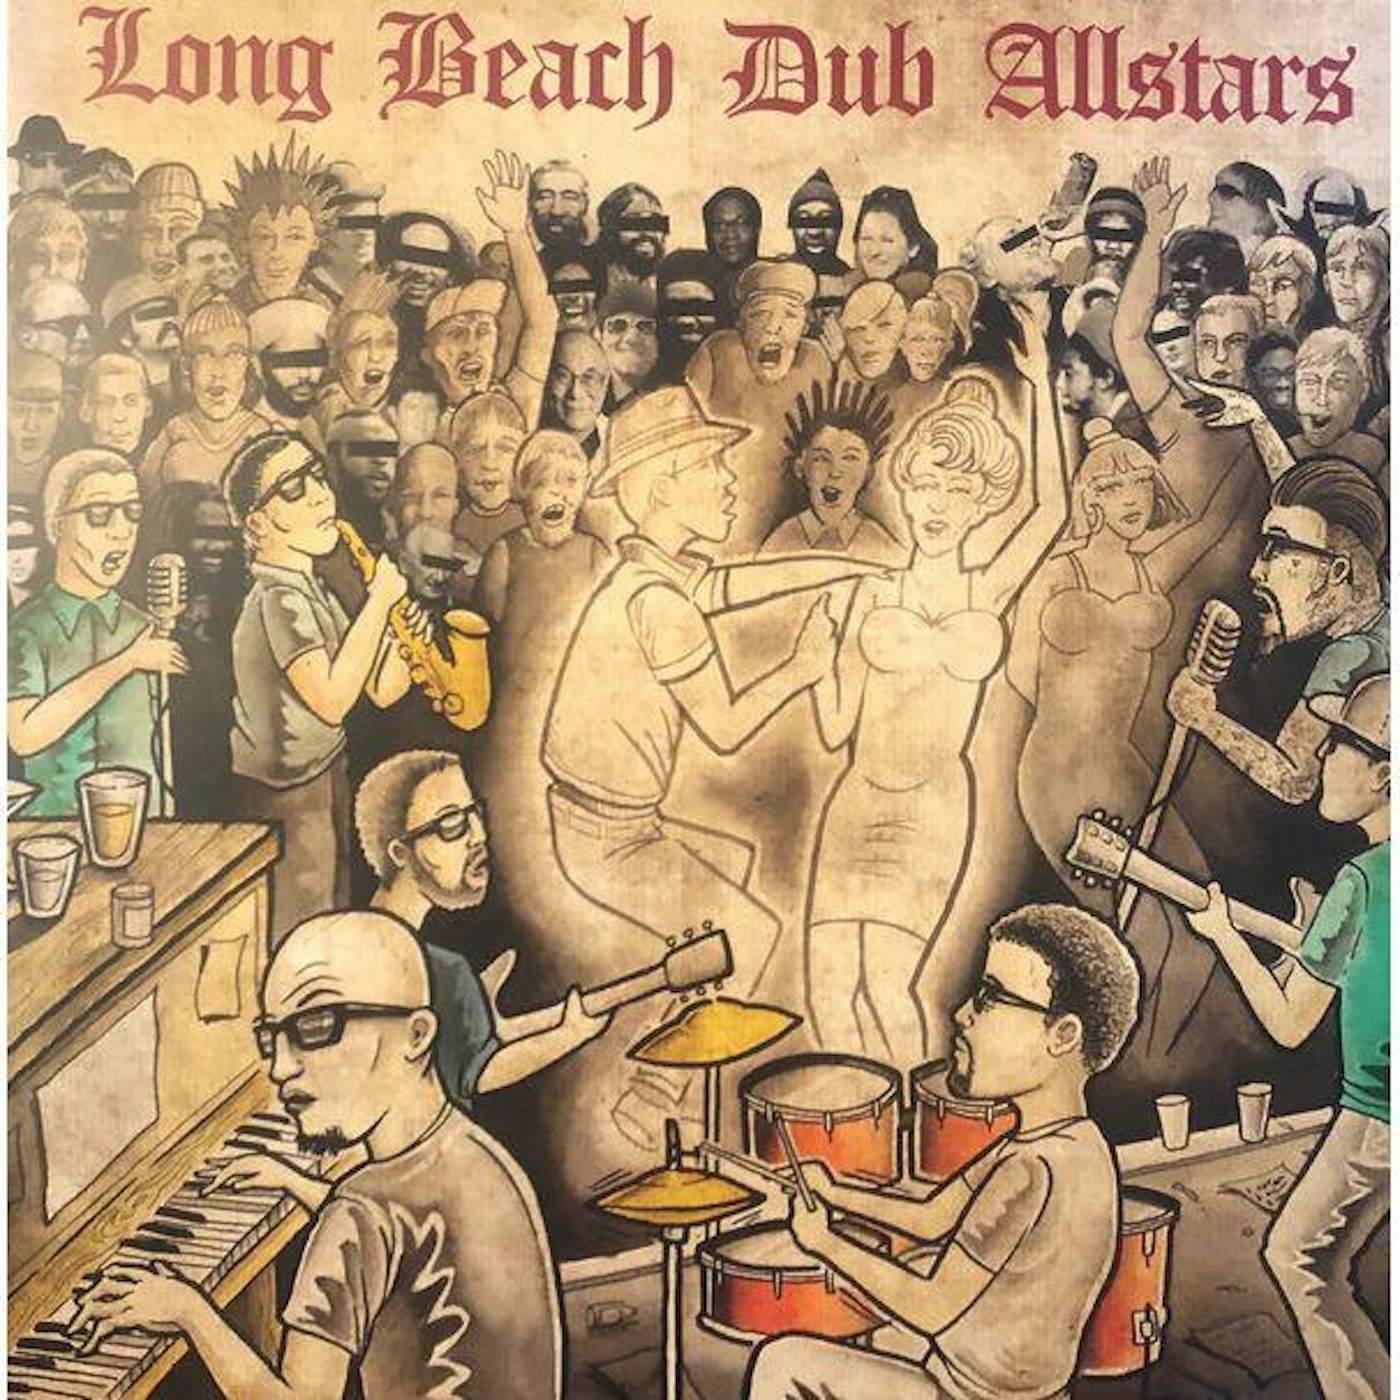 Long Beach Dub Allstars Vinyl Record